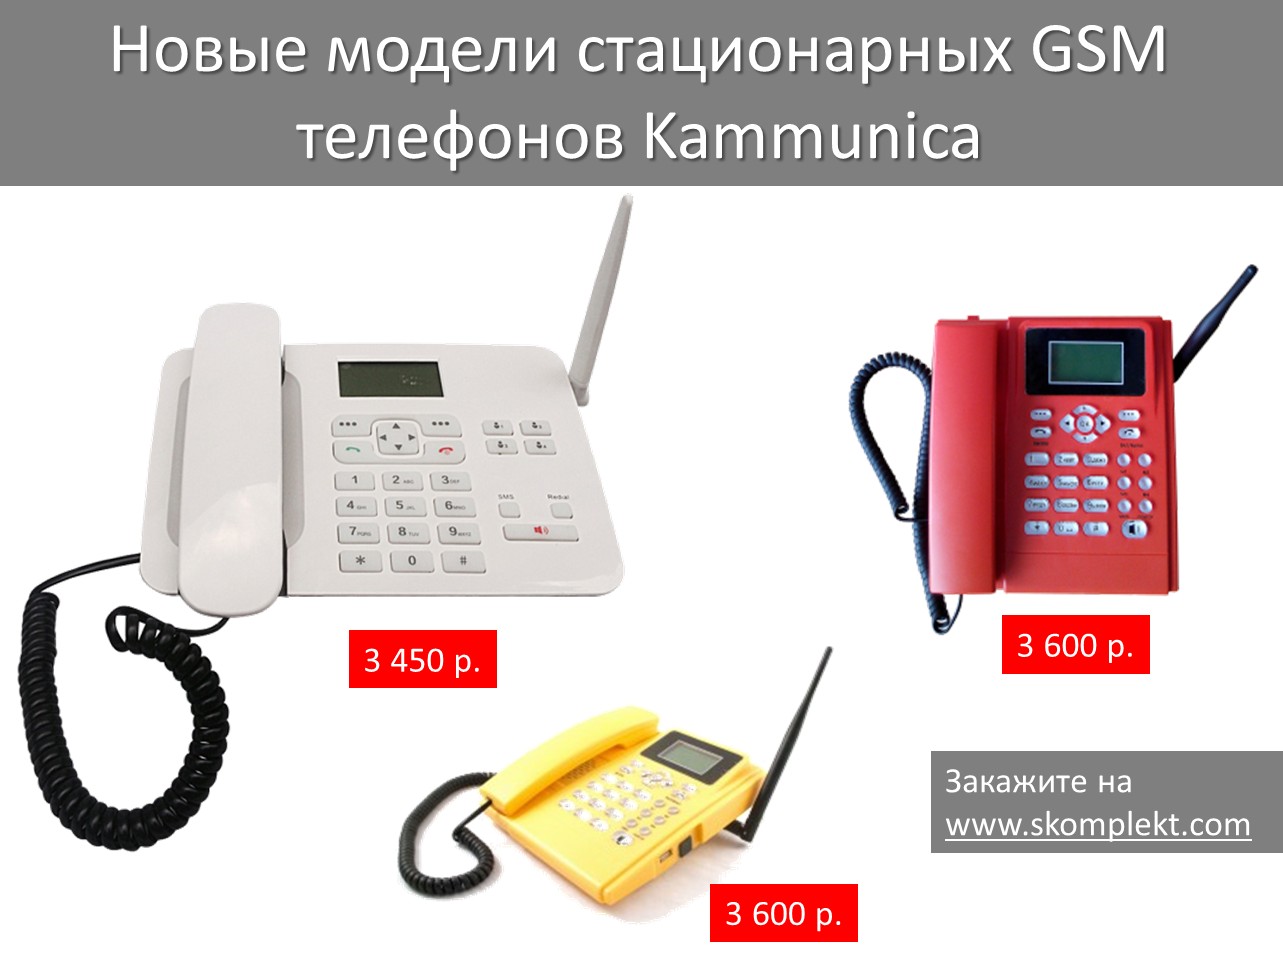 Новые модели стационарных GSM телефонов Kammunica